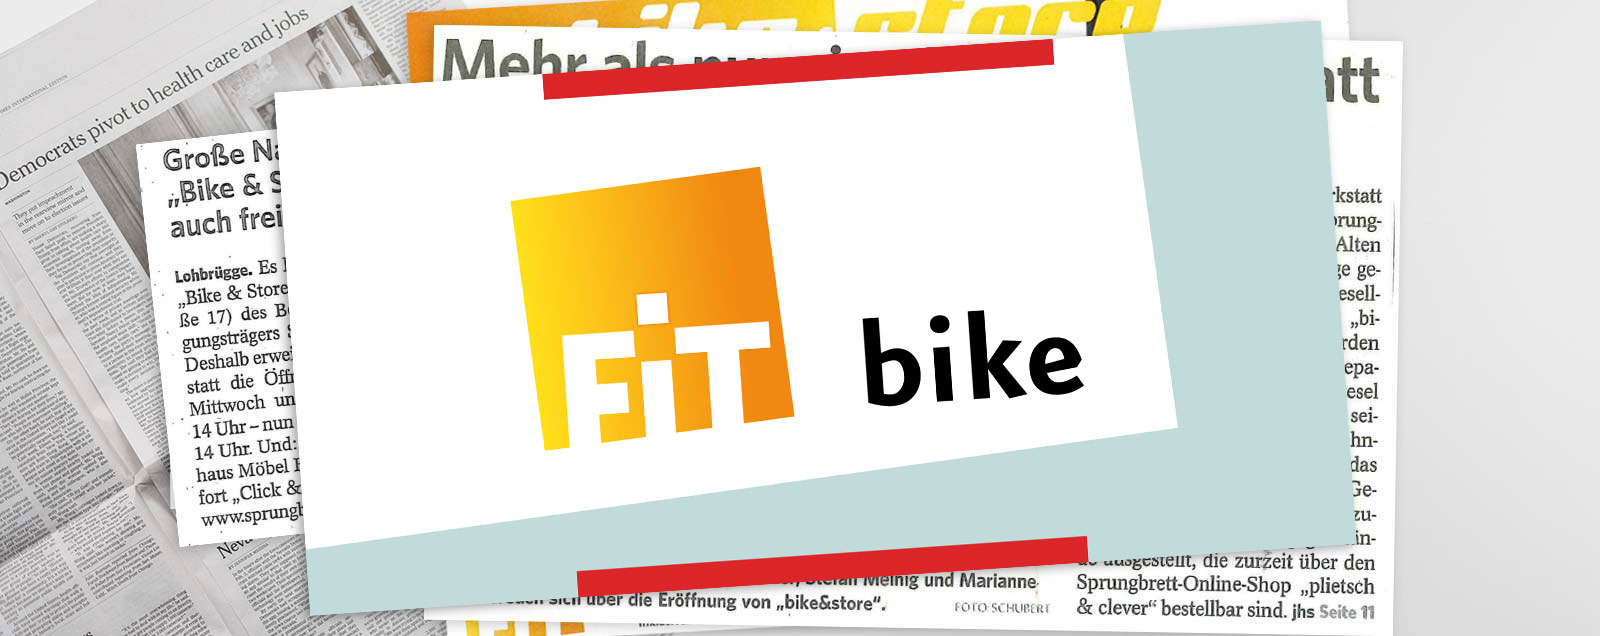 FIT - bike